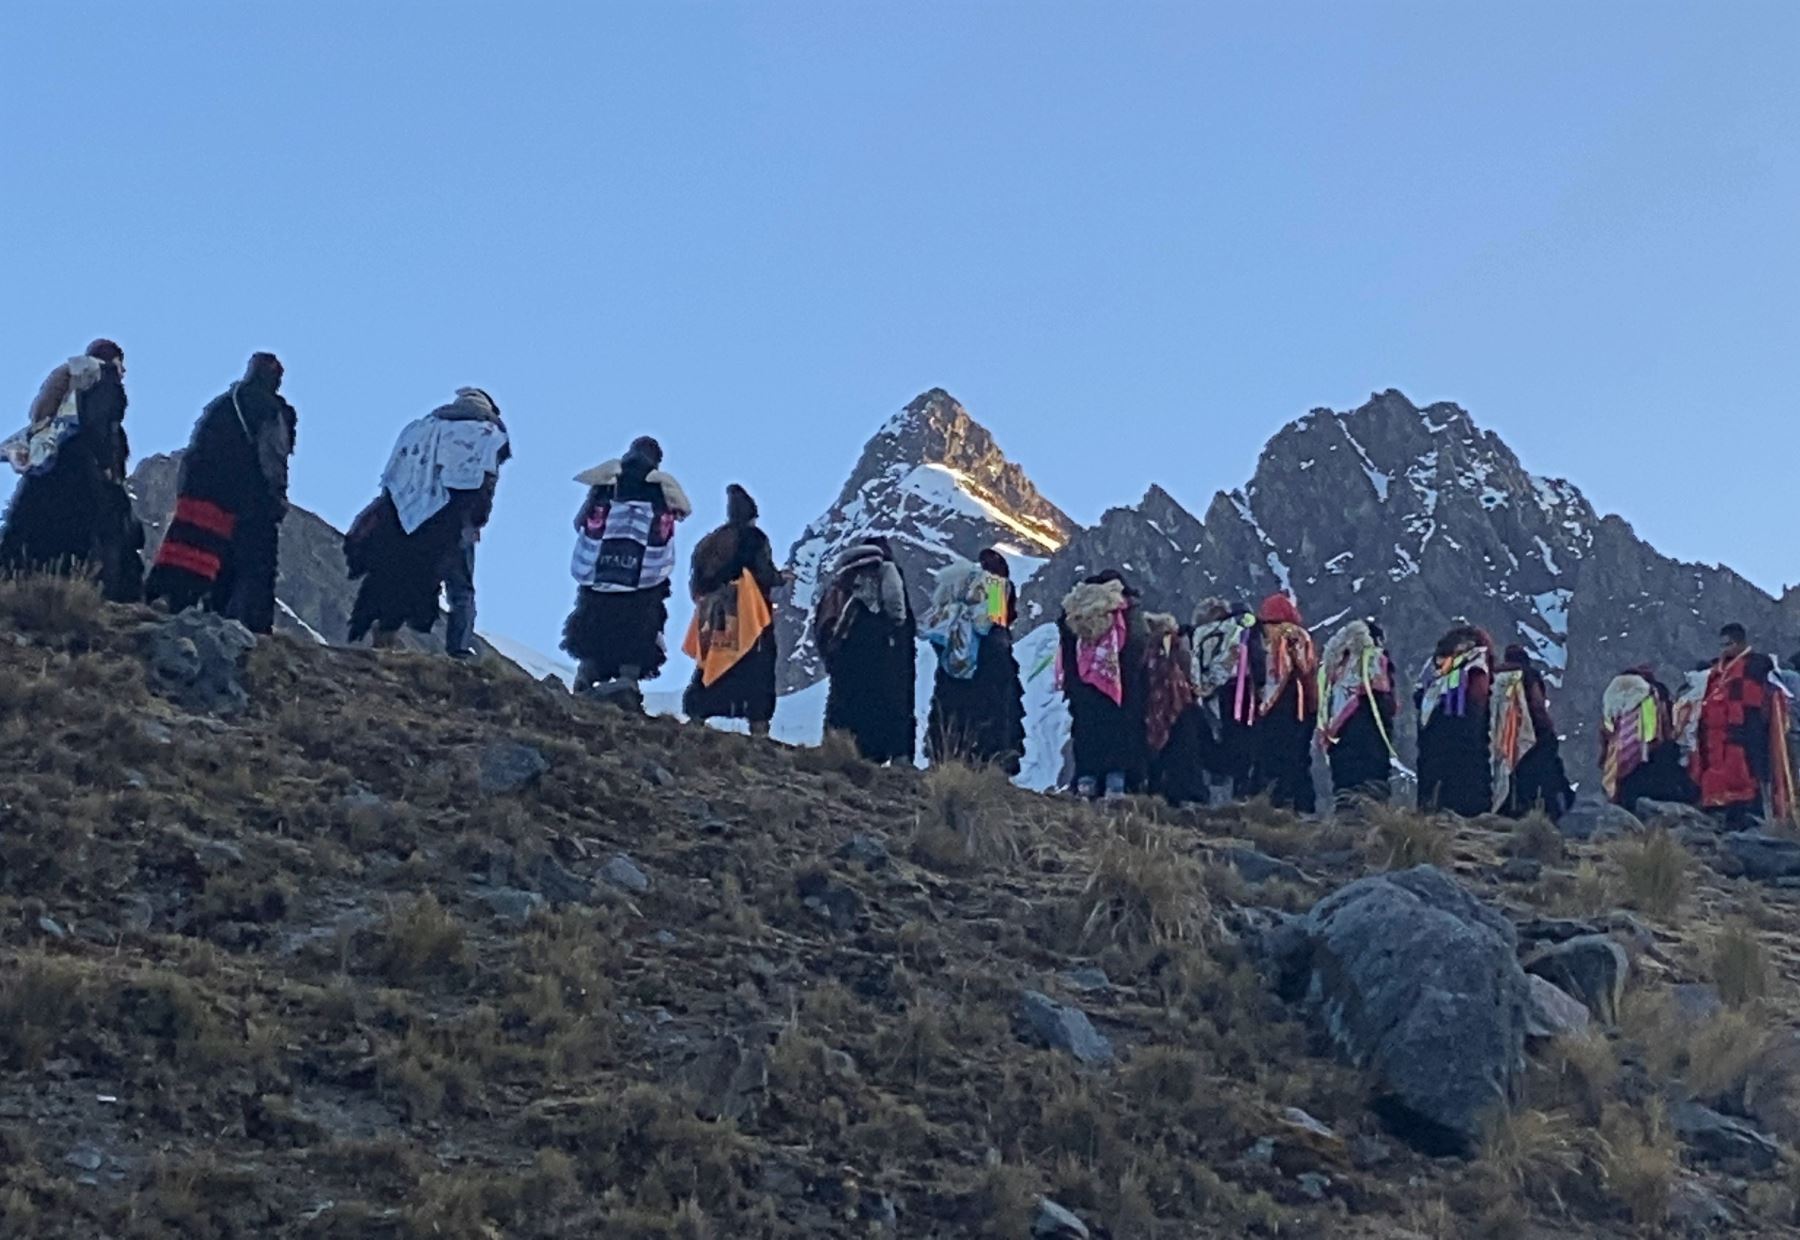 Así fue la imponente peregrinación al santuario del Señor de Qoyllur Riti en el nevado Colque Punku, en Cusco, que protagonizaron los representantes de la Nación Paucartambo. ANDINA/Percy Hurtado Santillán